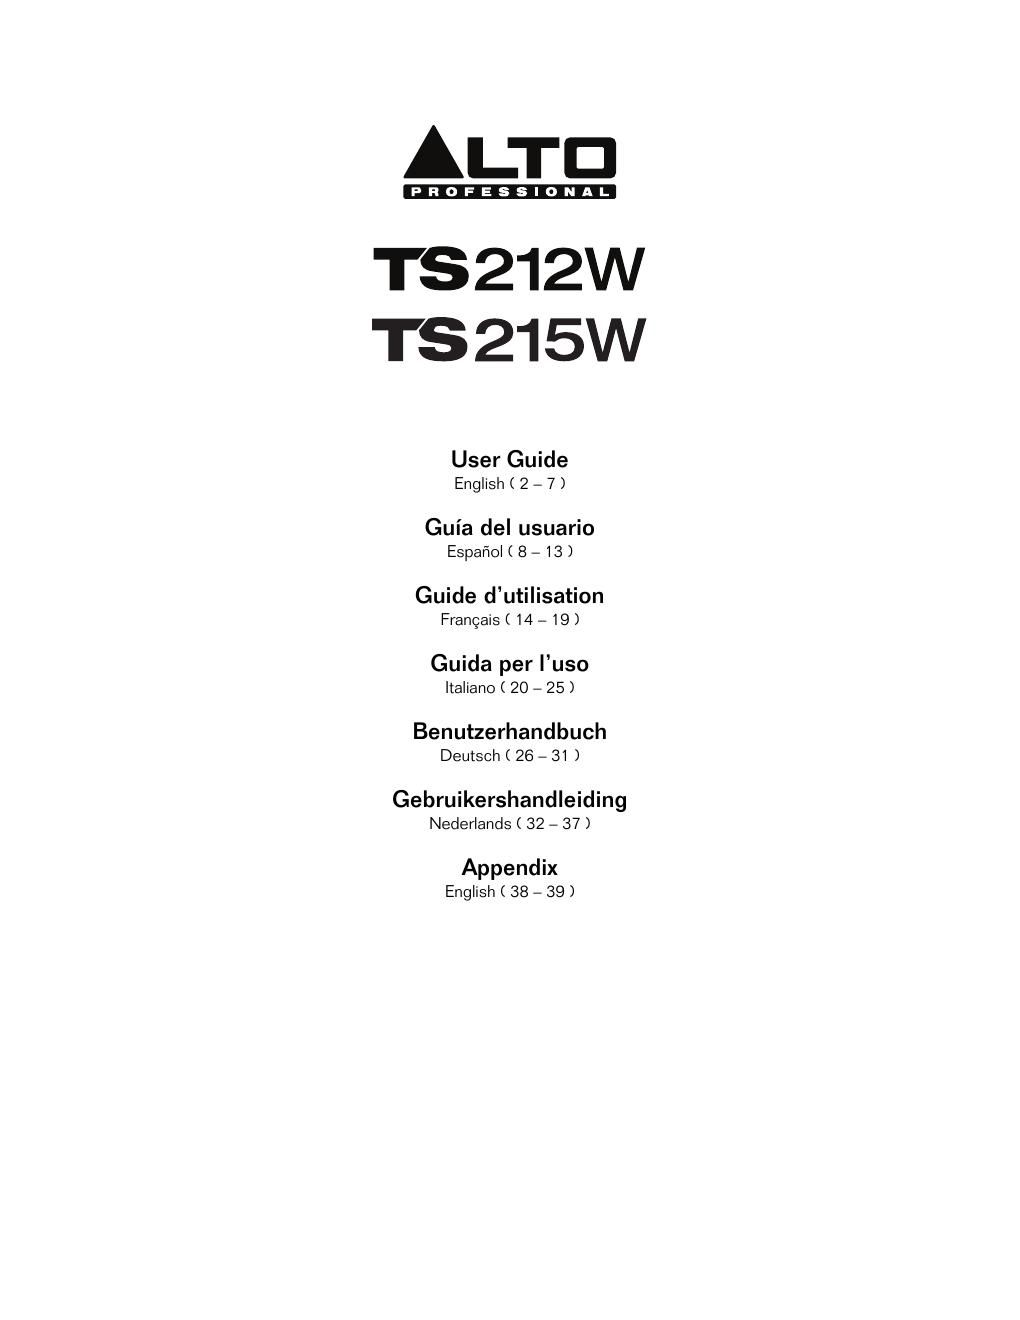 alto ts 215w user guide